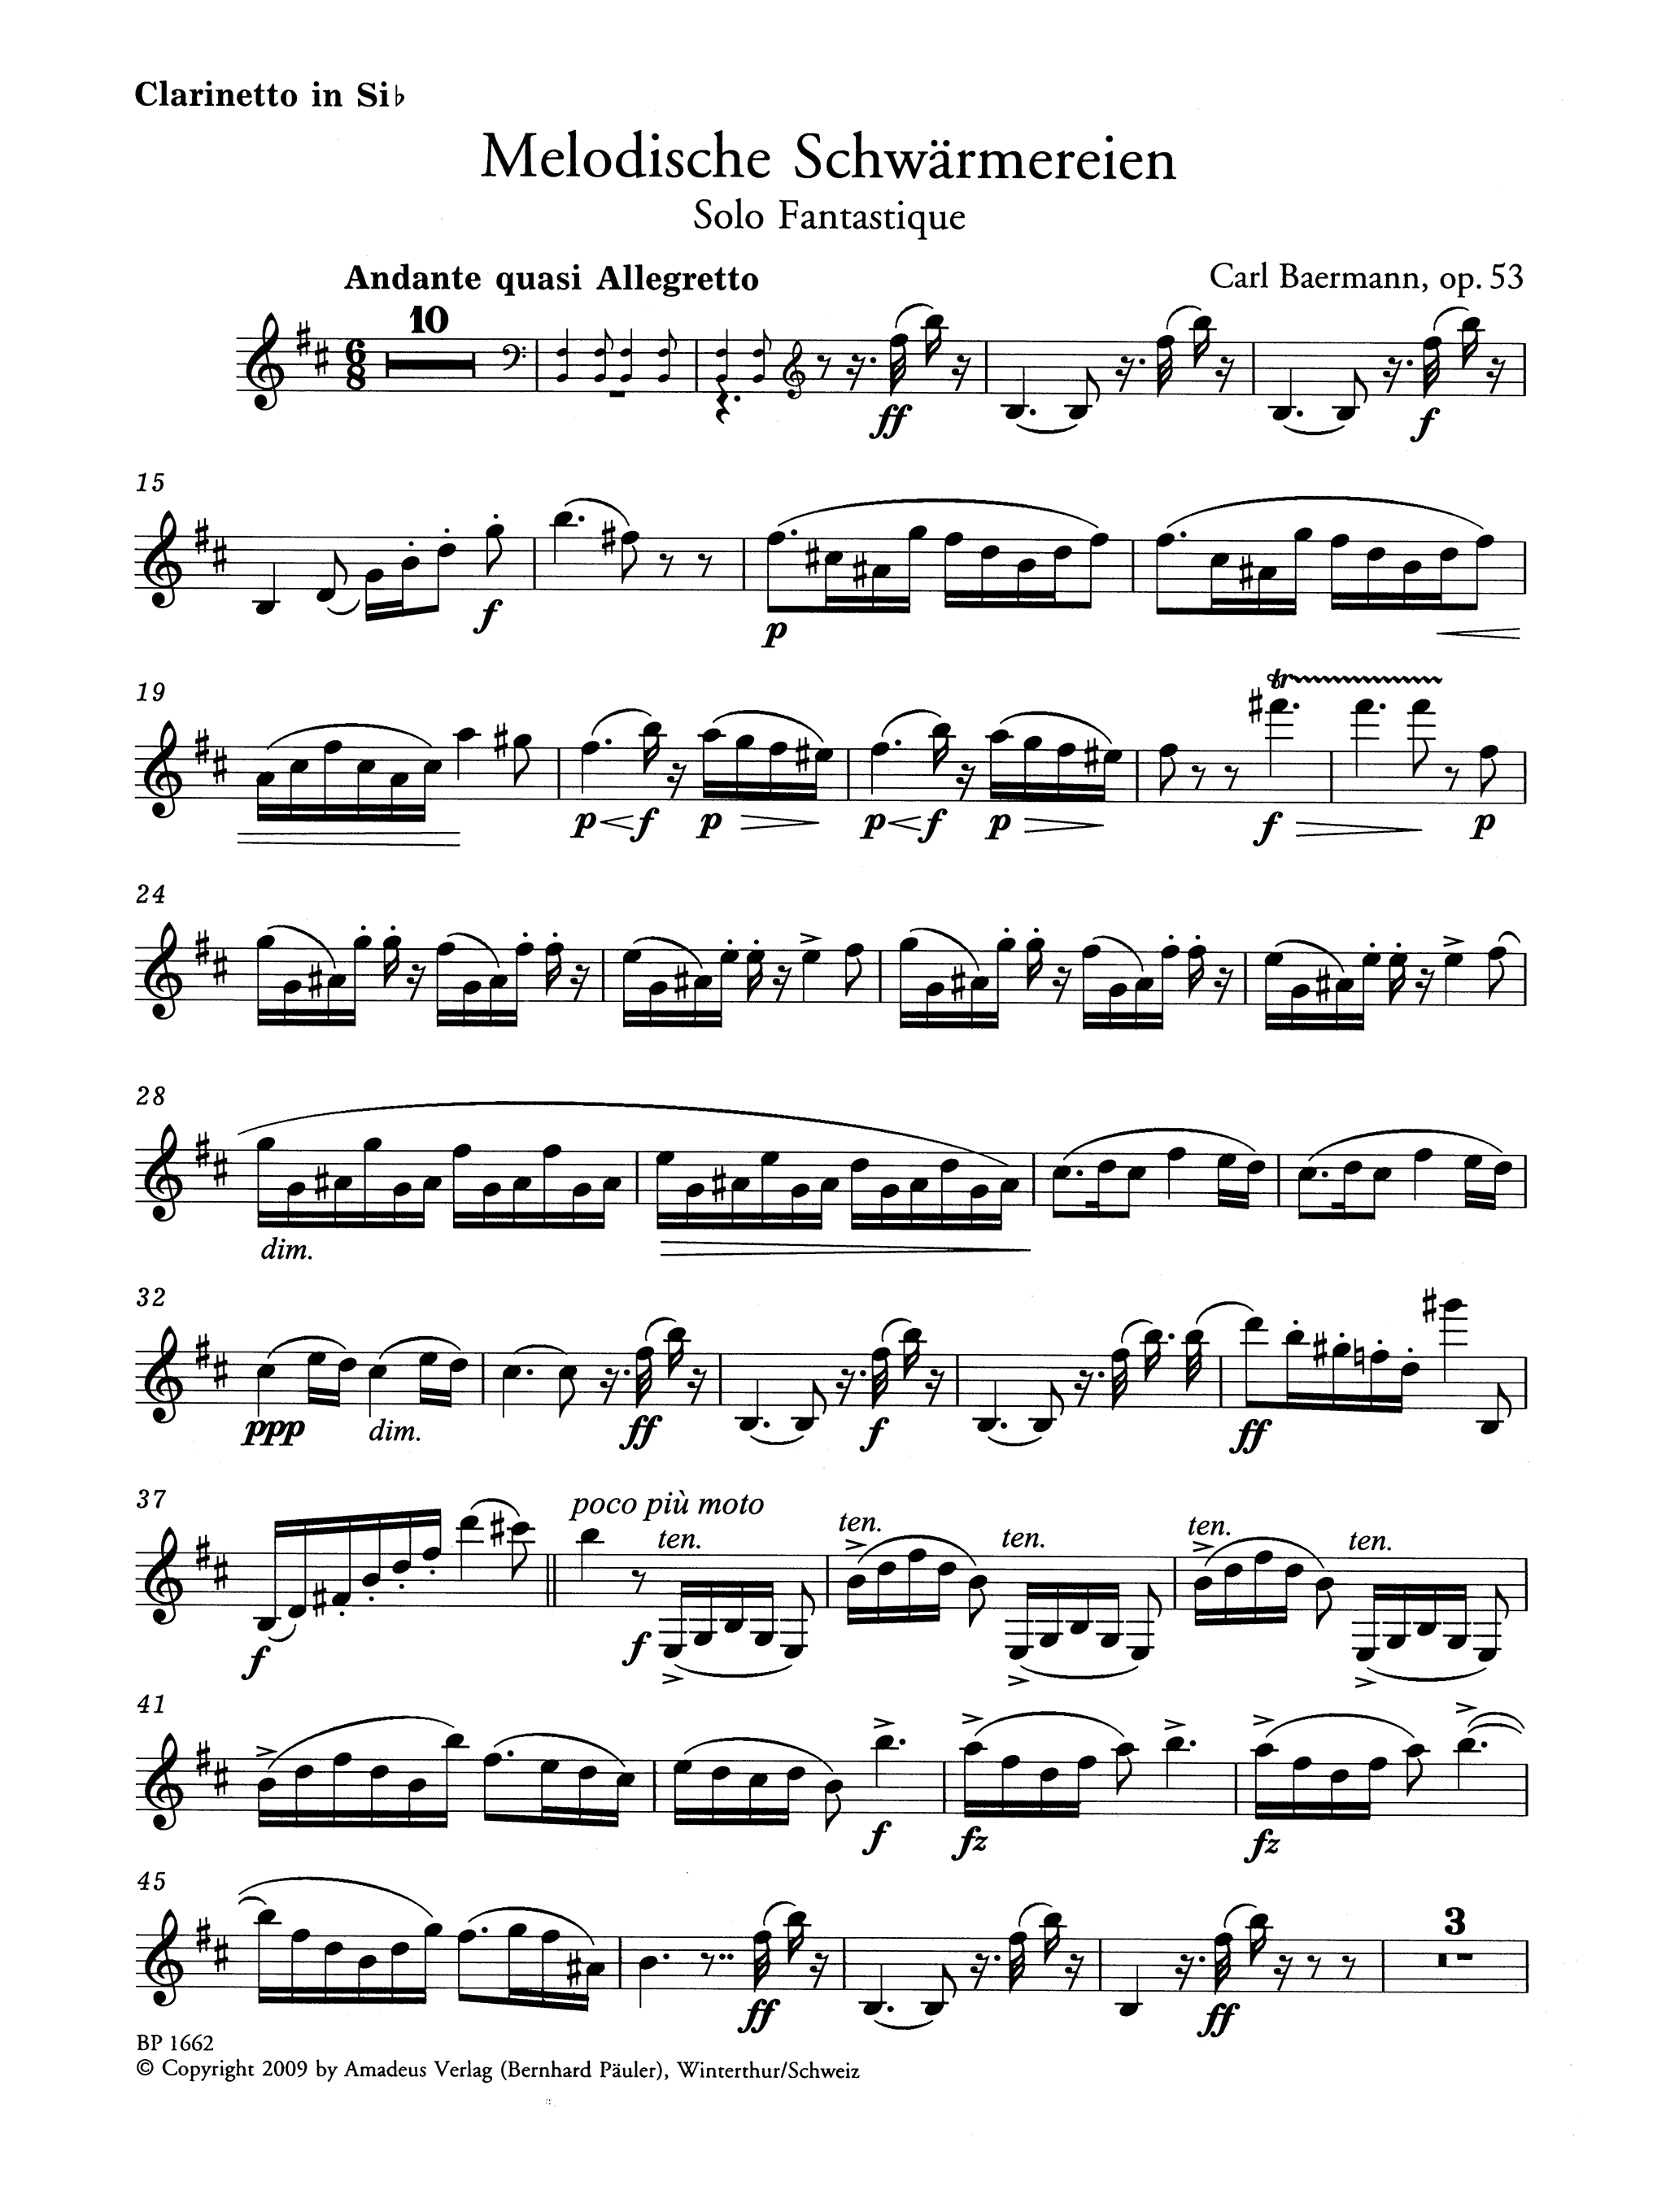 Carl Baermann Melodische Schwärmereien, Op. 53 clarinet and piano solo part